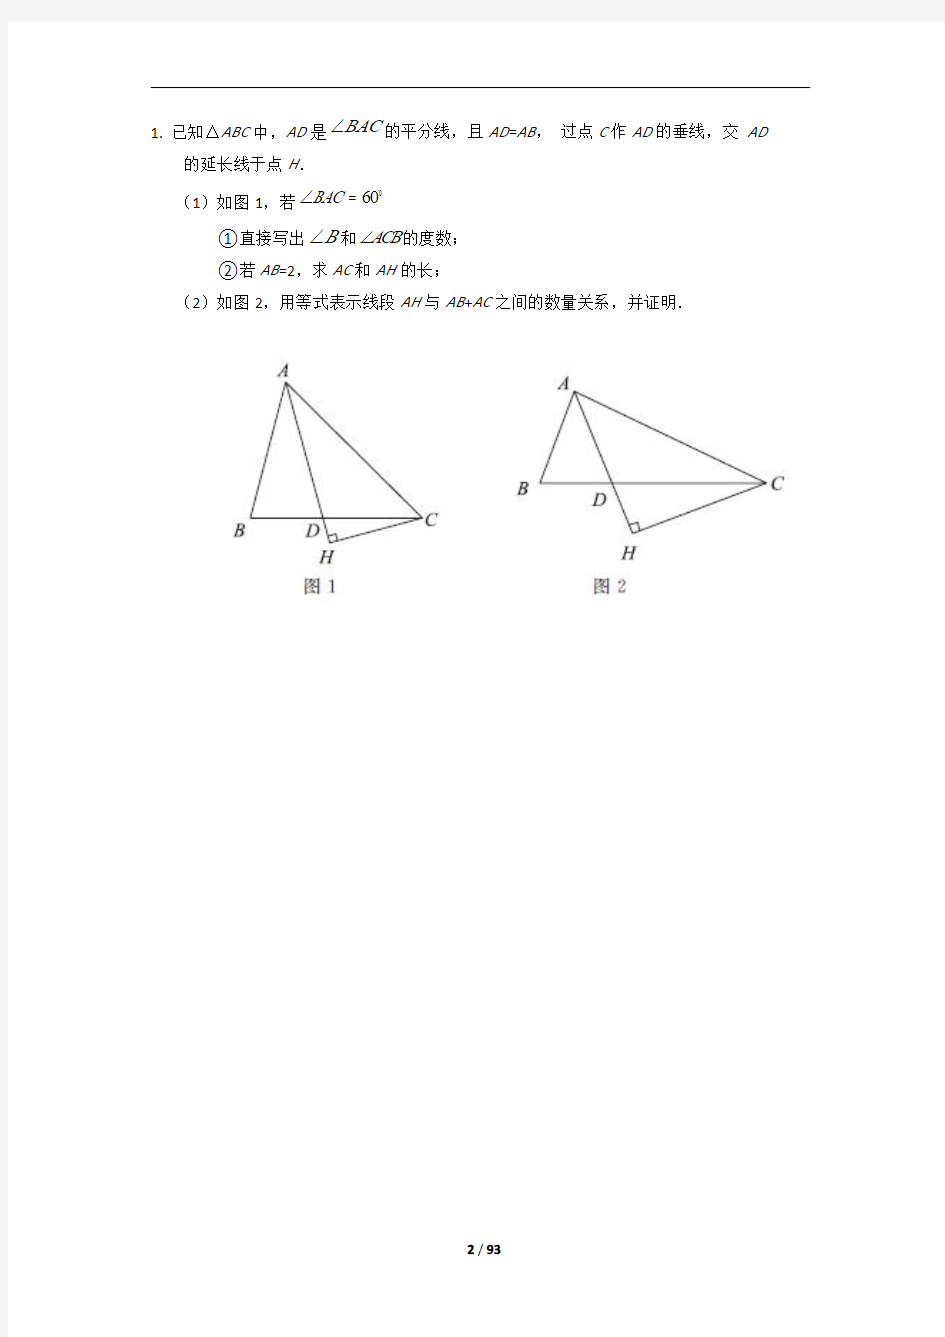 2019年北京中考数学100道压轴题归类(二)【几何综合题】